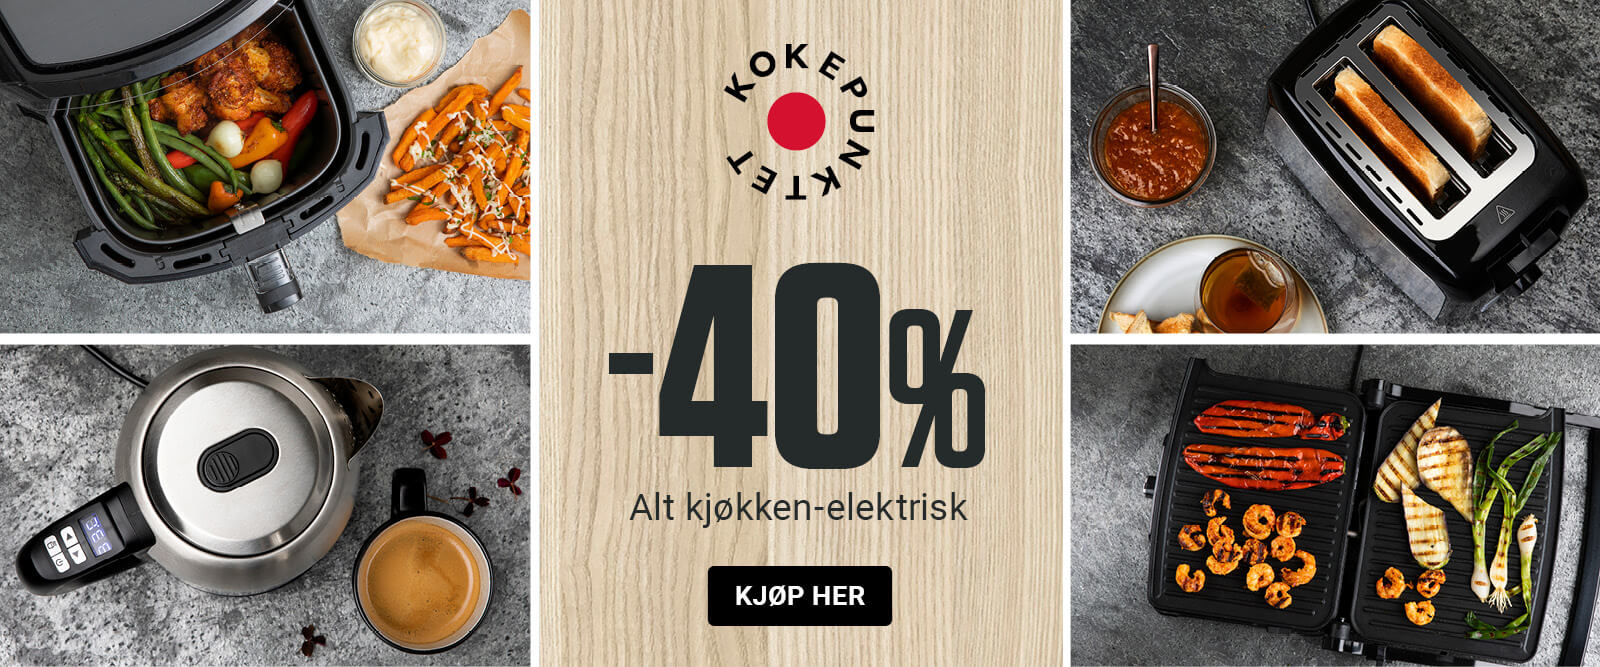 Alt kjøkken-el -40% 